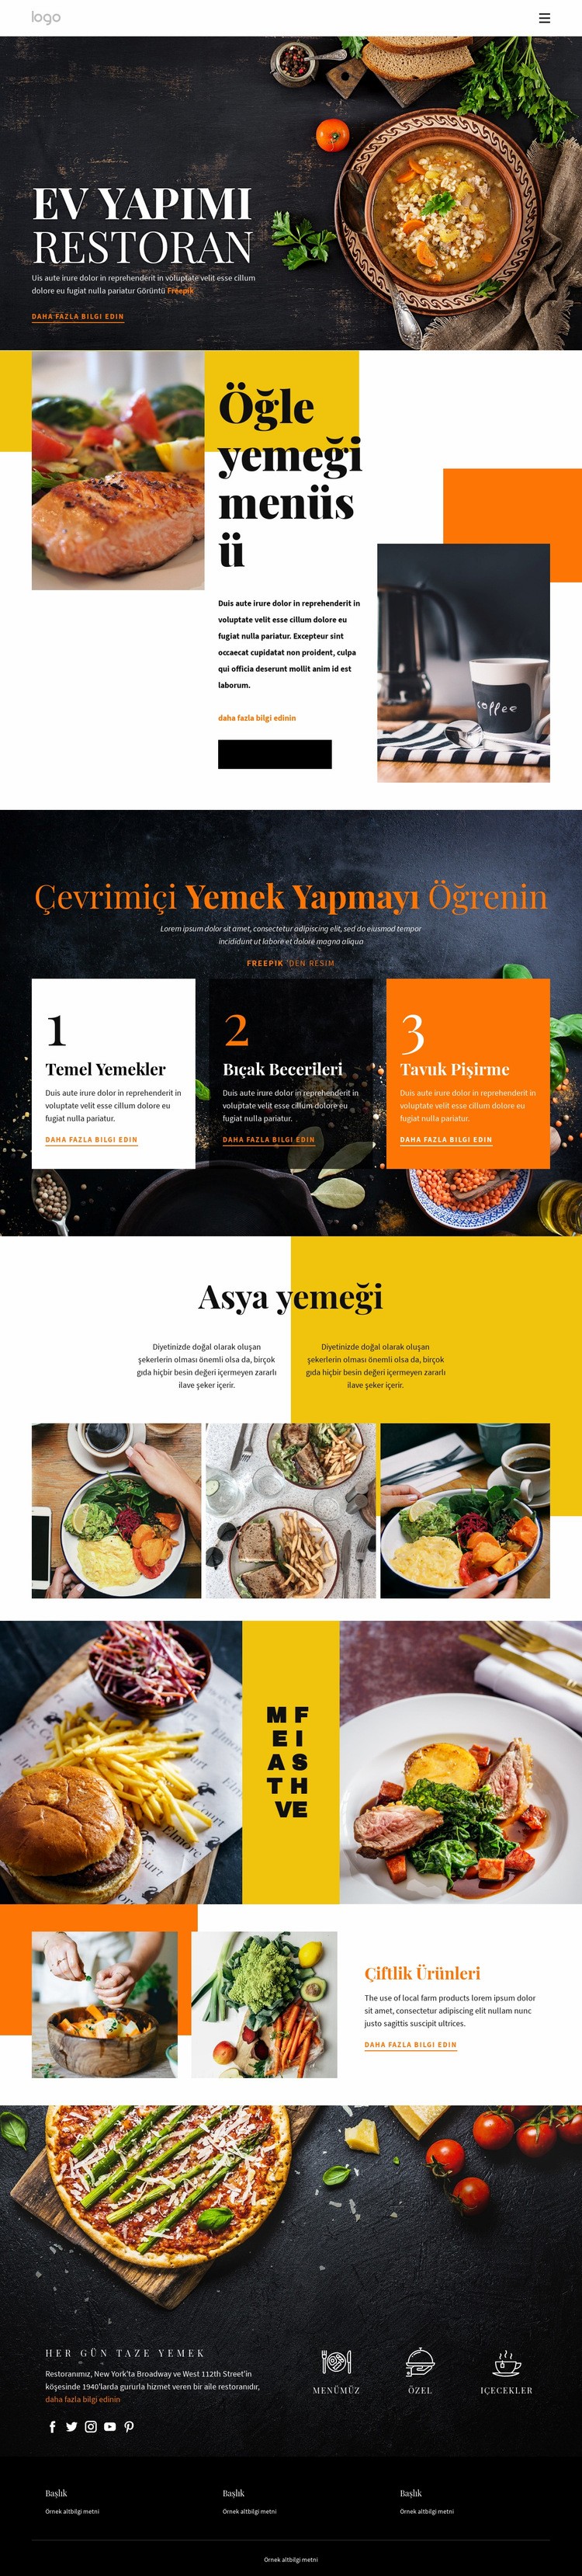 Ev yemeğinden daha iyi Web sitesi tasarımı